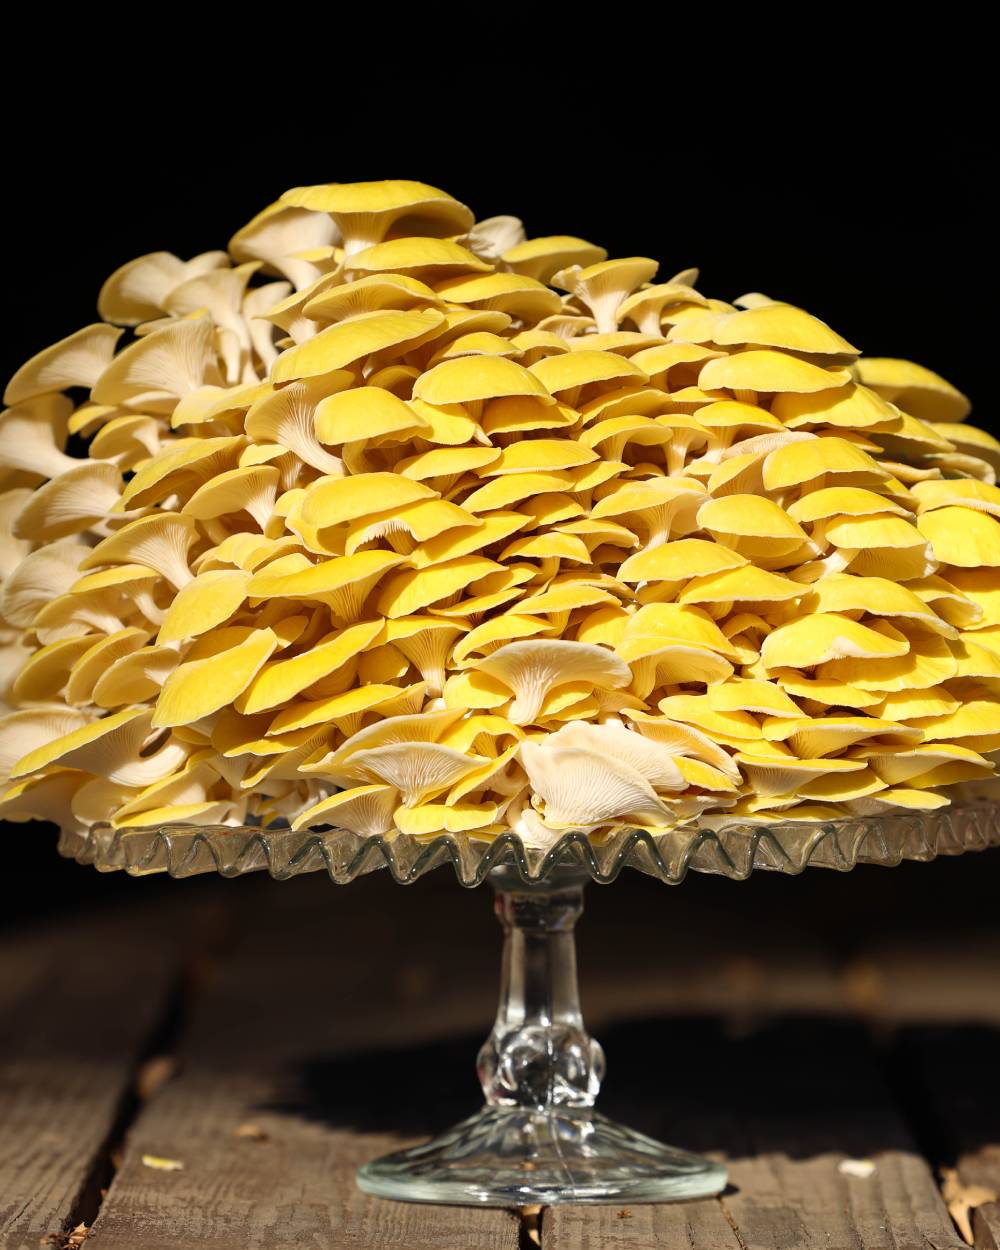 Golden Oyster Mushrooms